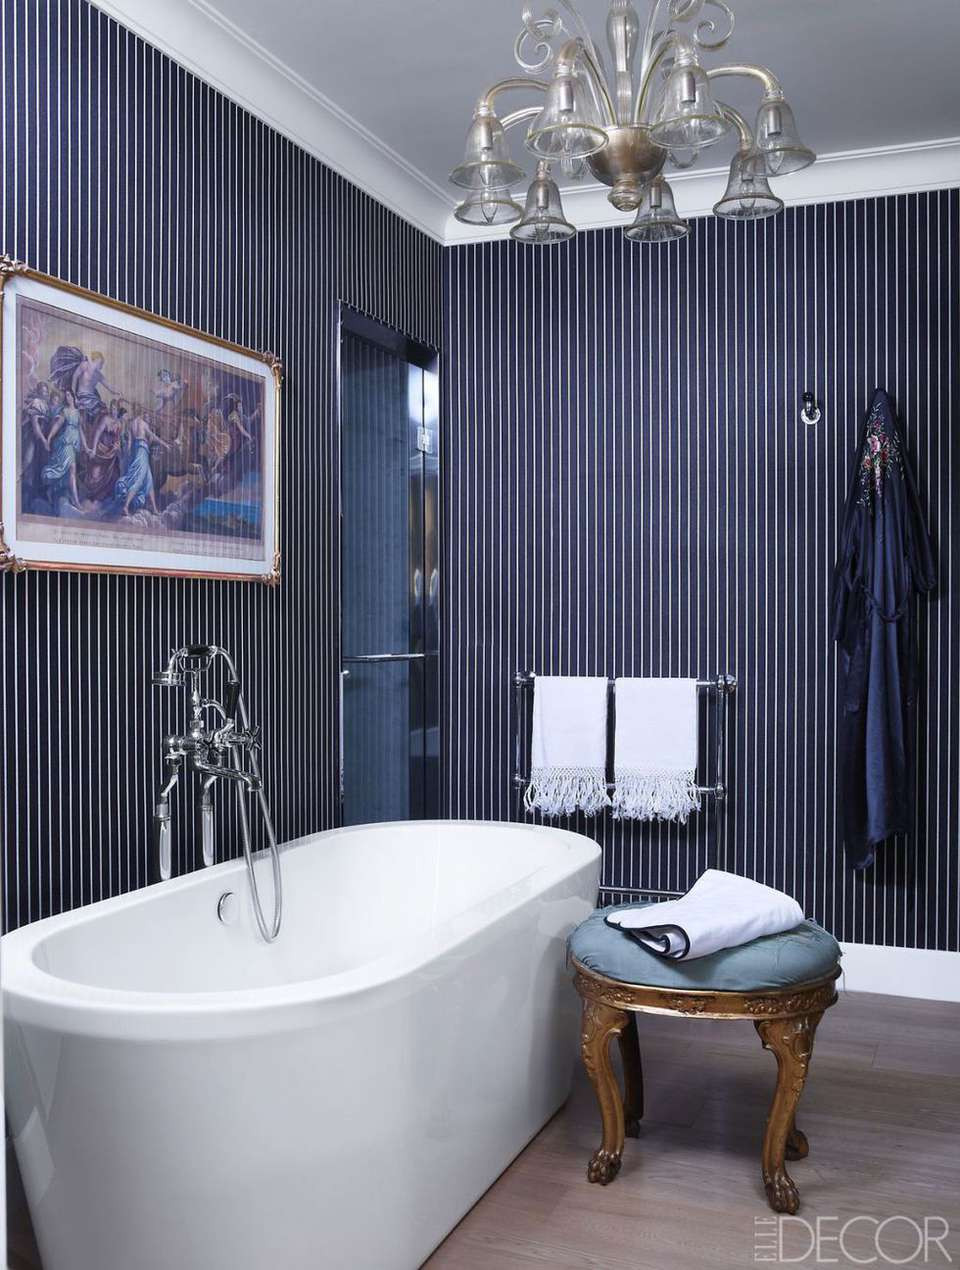 Navy Blue Bathroom Wall Decor
 10 Navy Blue Bathroom Ideas